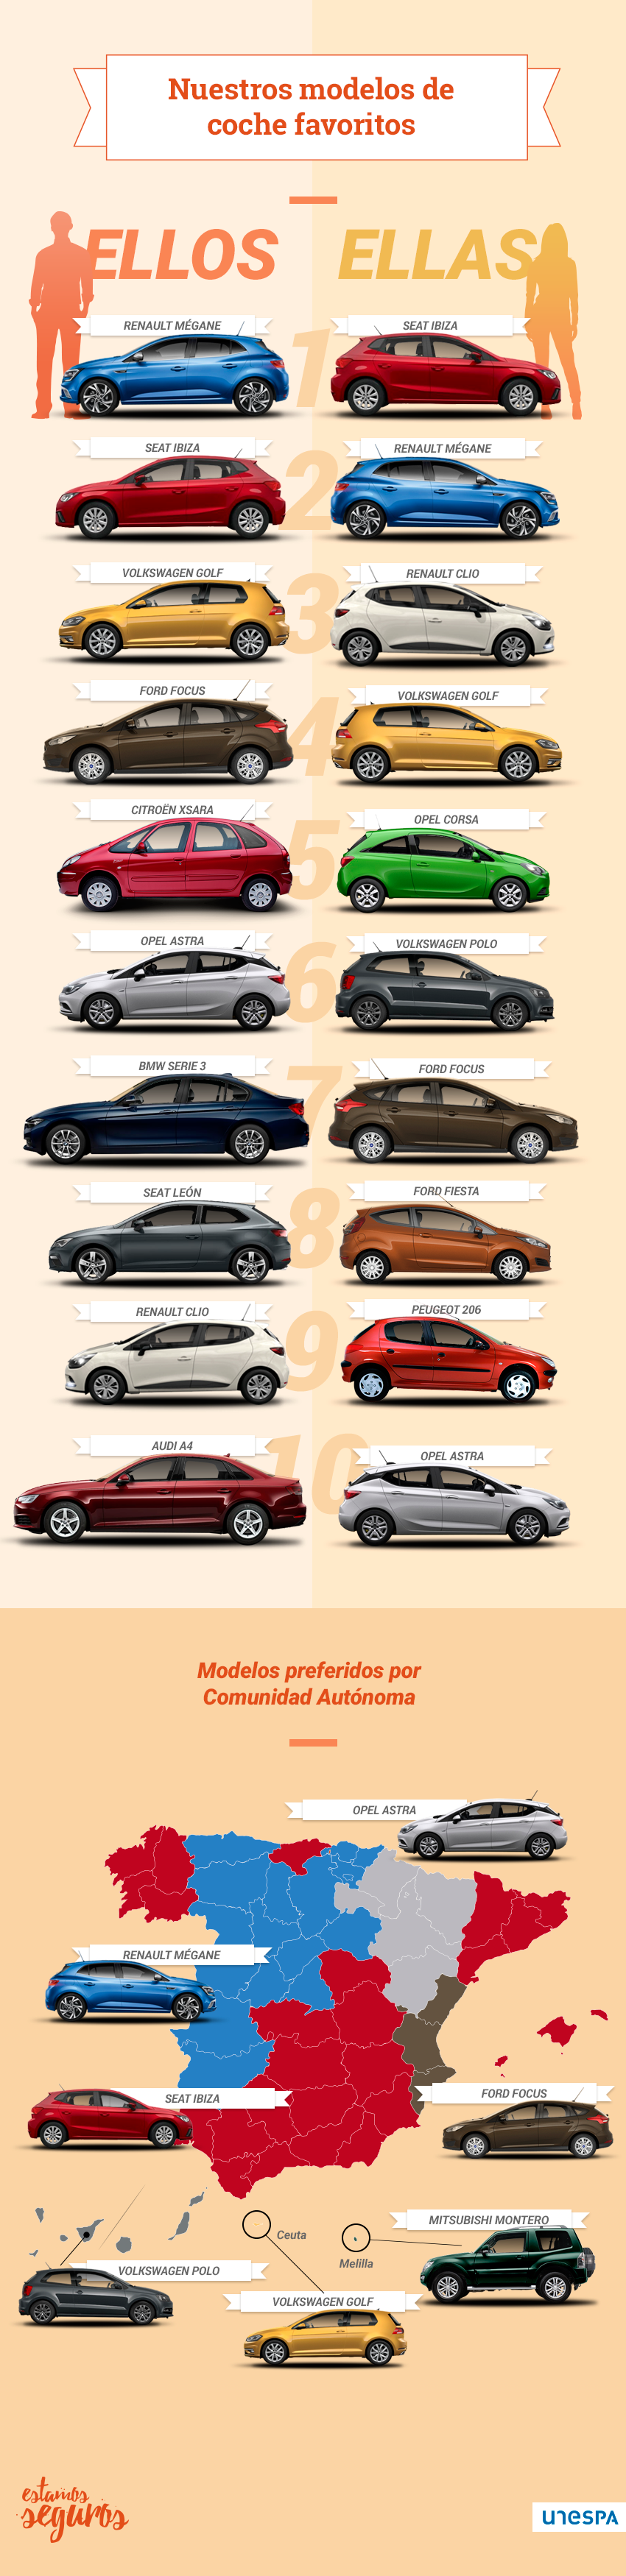 infografía coches